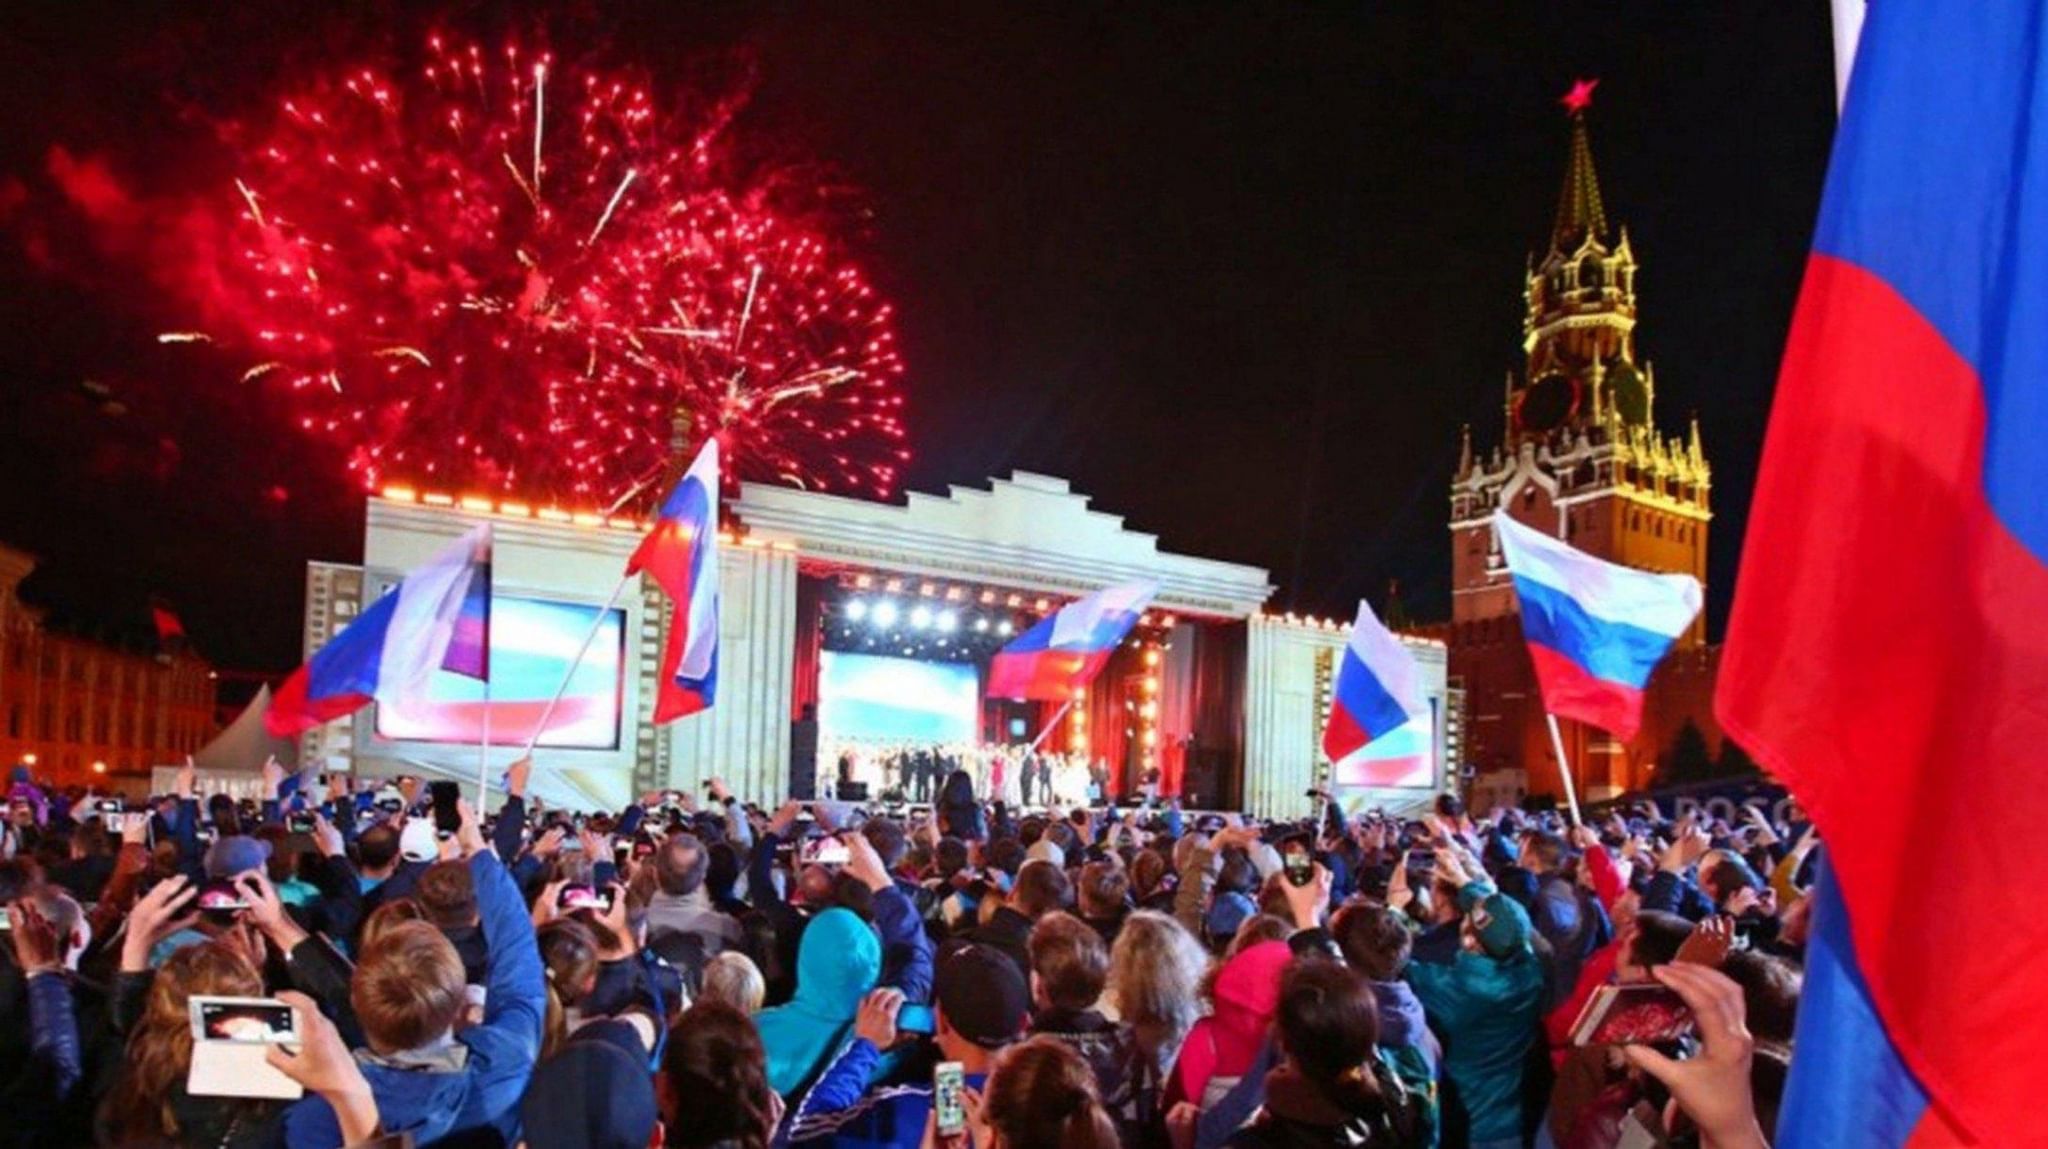 12 июня независимости. Празднование дня Росси. День России празднование. День независимости России. День независимости праздник в России.